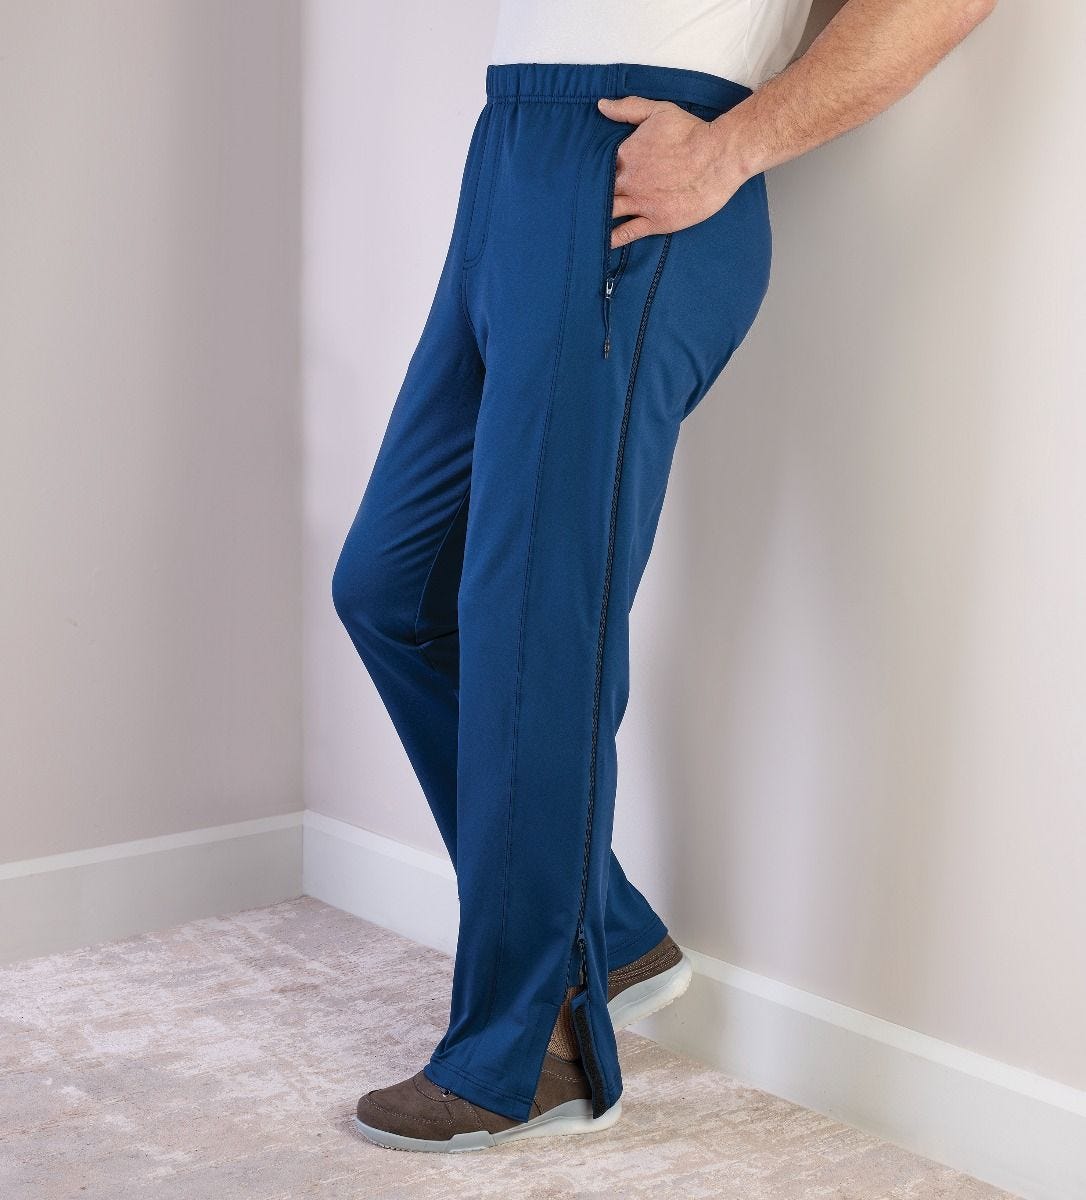 Jeans & Pants, COTTON NAVY BLUE JENS PANT 💙